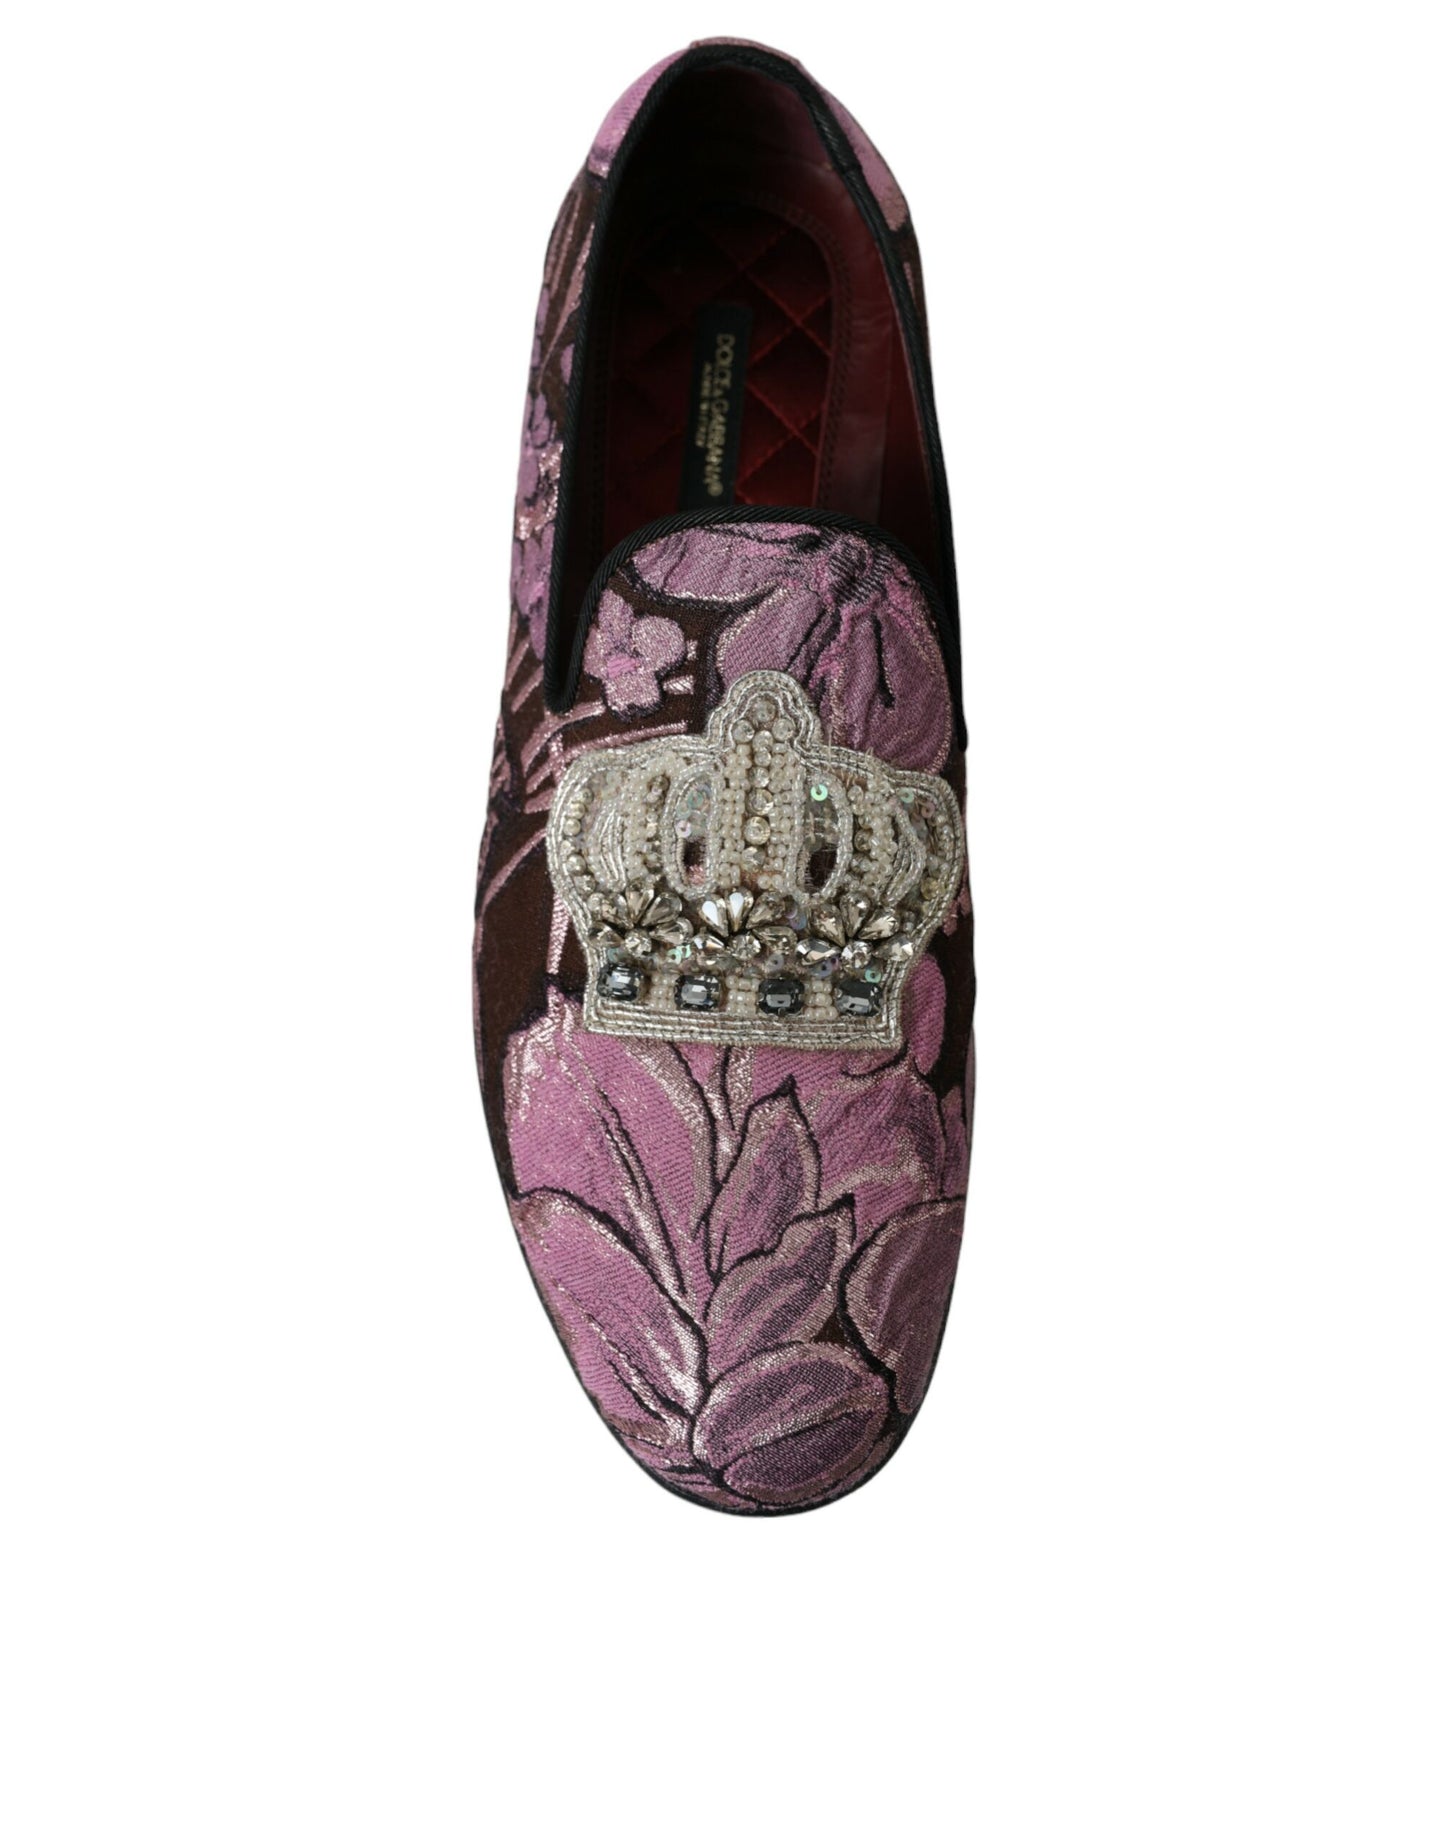 Dolce & gabbana pink crystal-embellished loafers